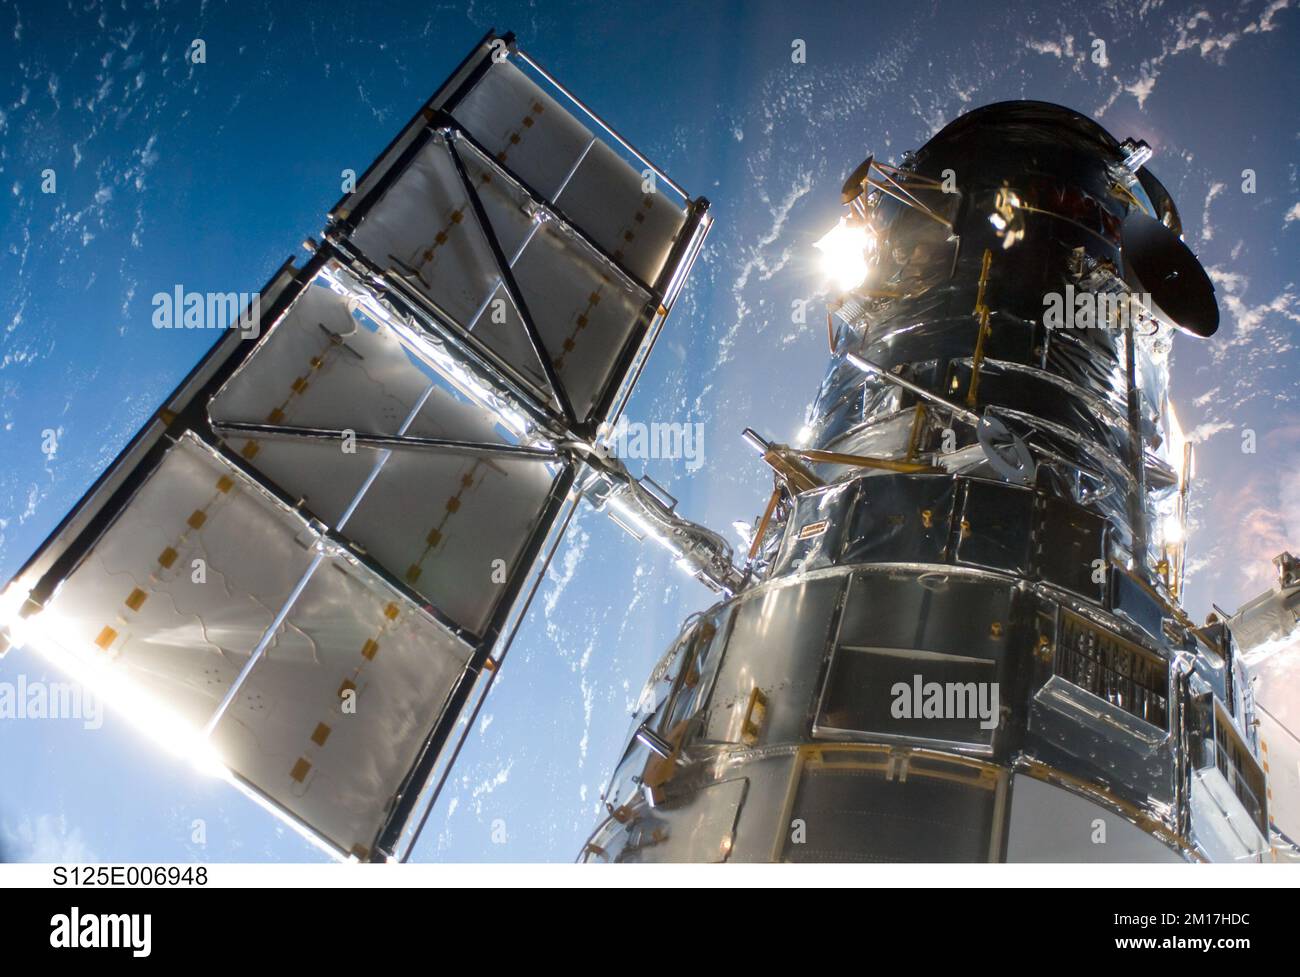 Raumfähre-Satellit im Weltraum nahe Planet Erde. Atlantis-Raumschiff. Digital optimiert. Elemente dieses Bildes, bereitgestellt von der NASA. Stockfoto